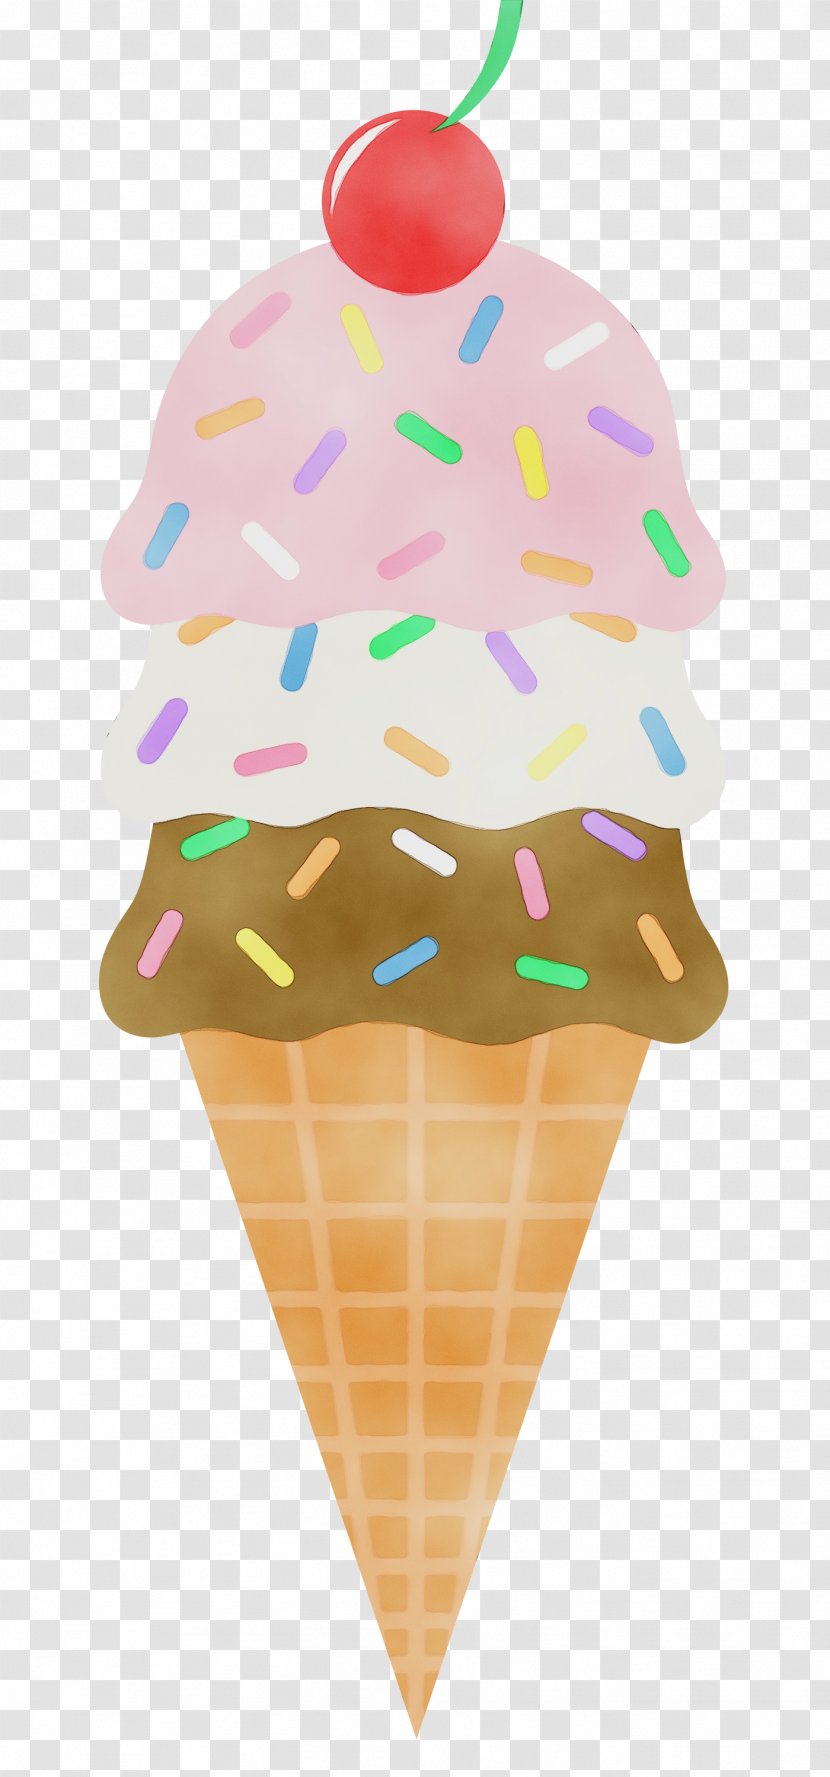 Ice Cream Cone Background - Frozen Dessert - Chocolate Dondurma Transparent PNG